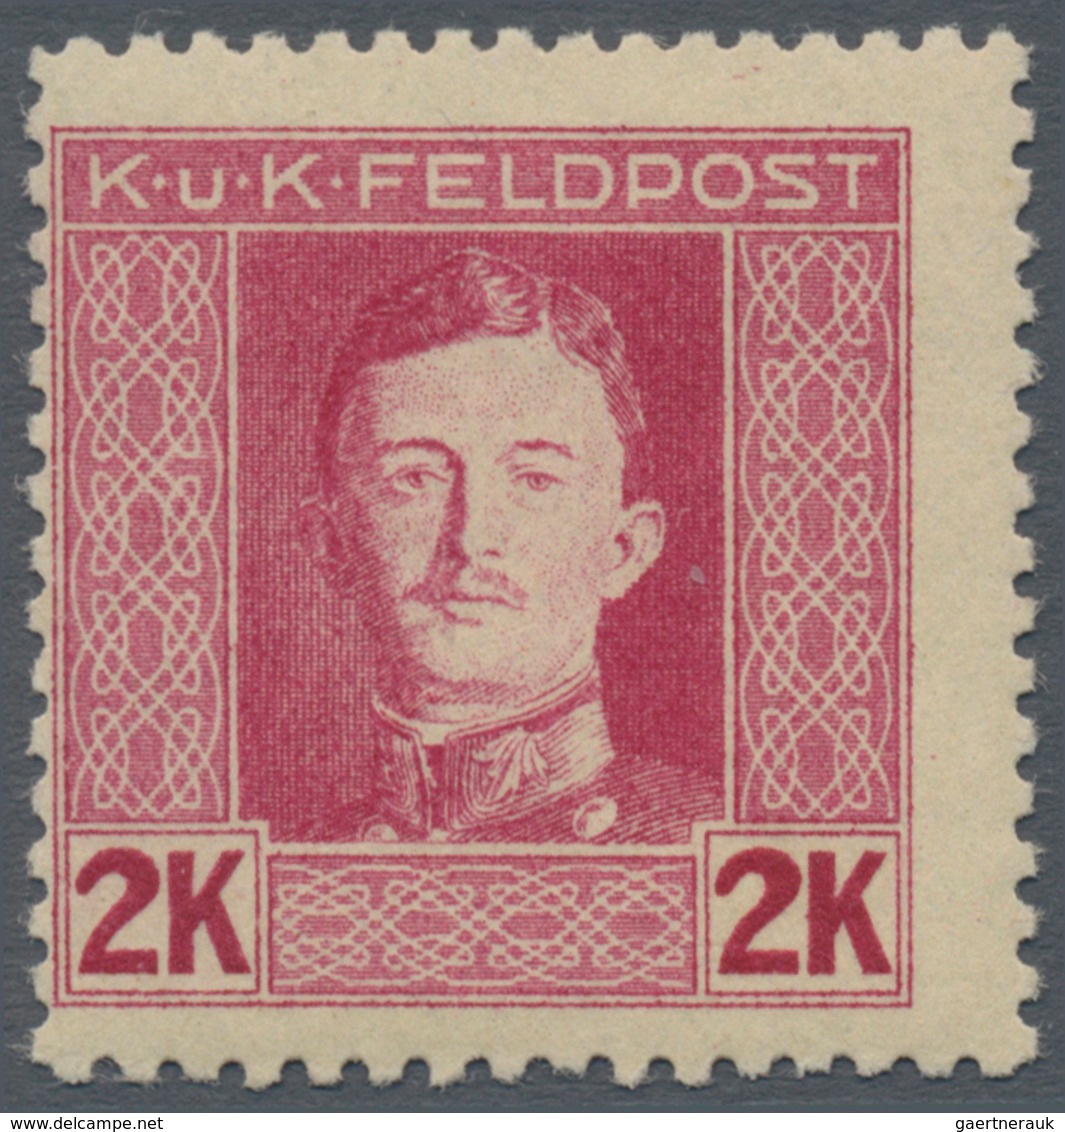 Österreichisch-Ungarische Feldpost - Allgemeine Ausgabe: 1917 Kaiser Karl I komplette postfrische Ga